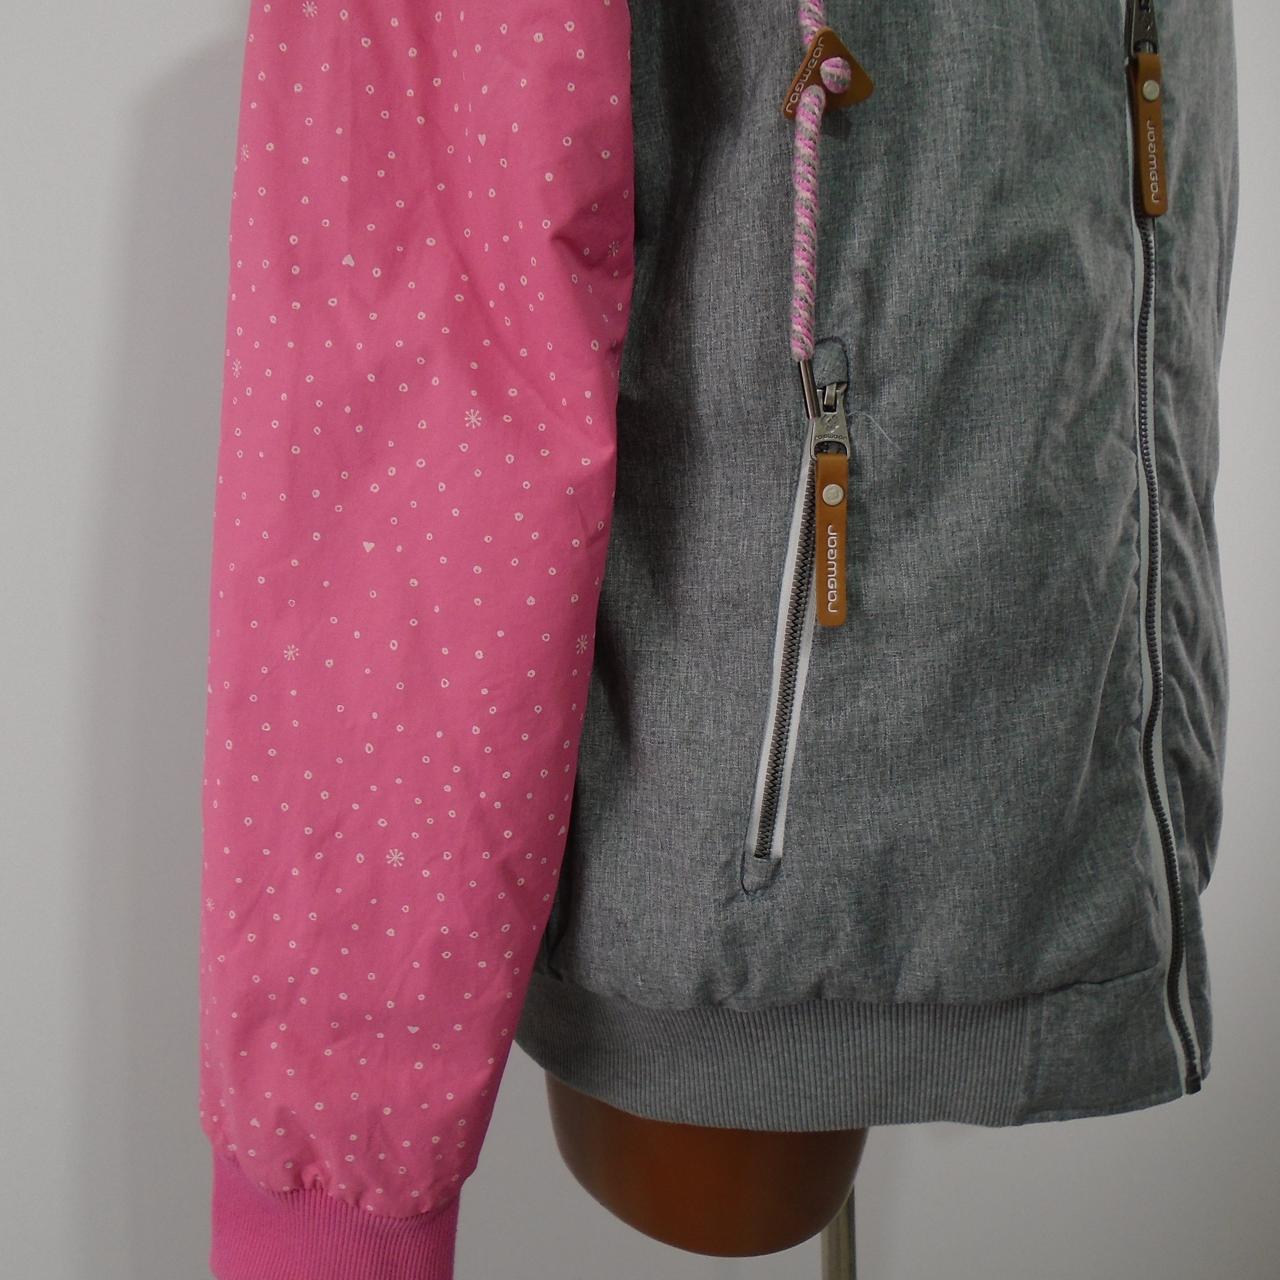 Very – Jacket Women\'s Used. Ragwear. Deja Outlet XL. good Vu Multicolor.